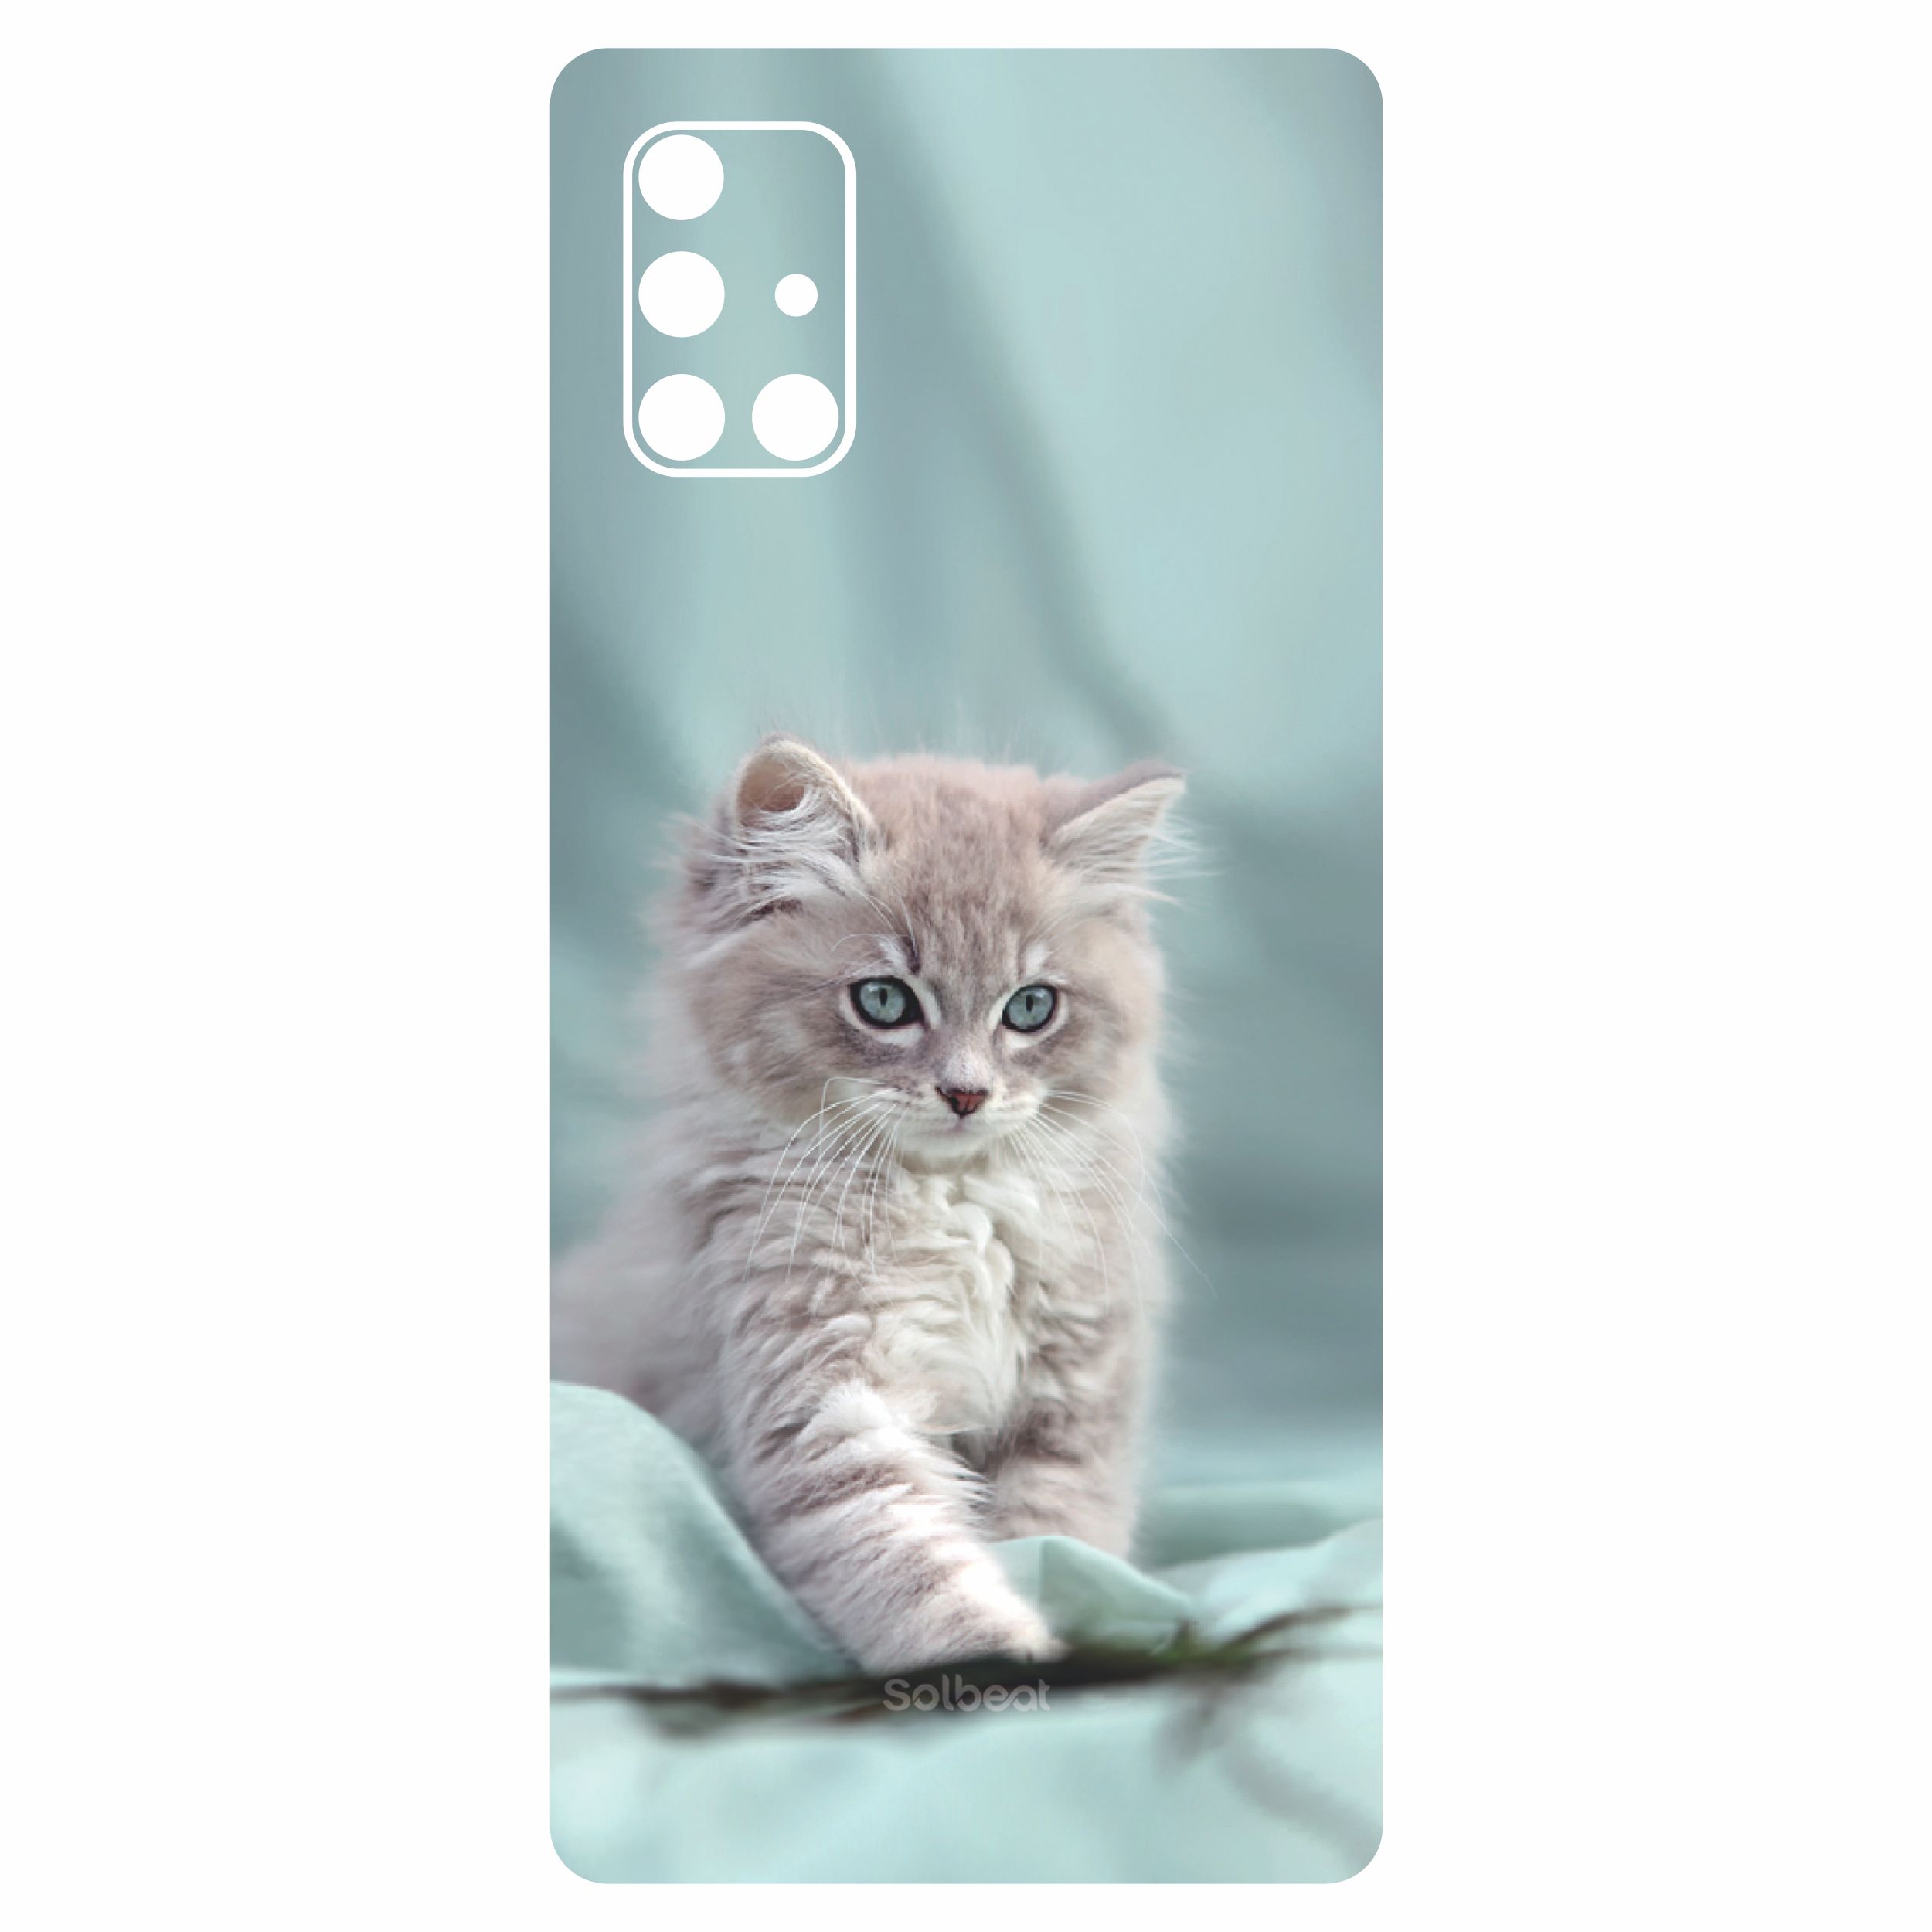 برچسب پوششی سلبیت مدل Mercury Cat مناسب برای گوشی موبایل سامسونگ Galaxy A71